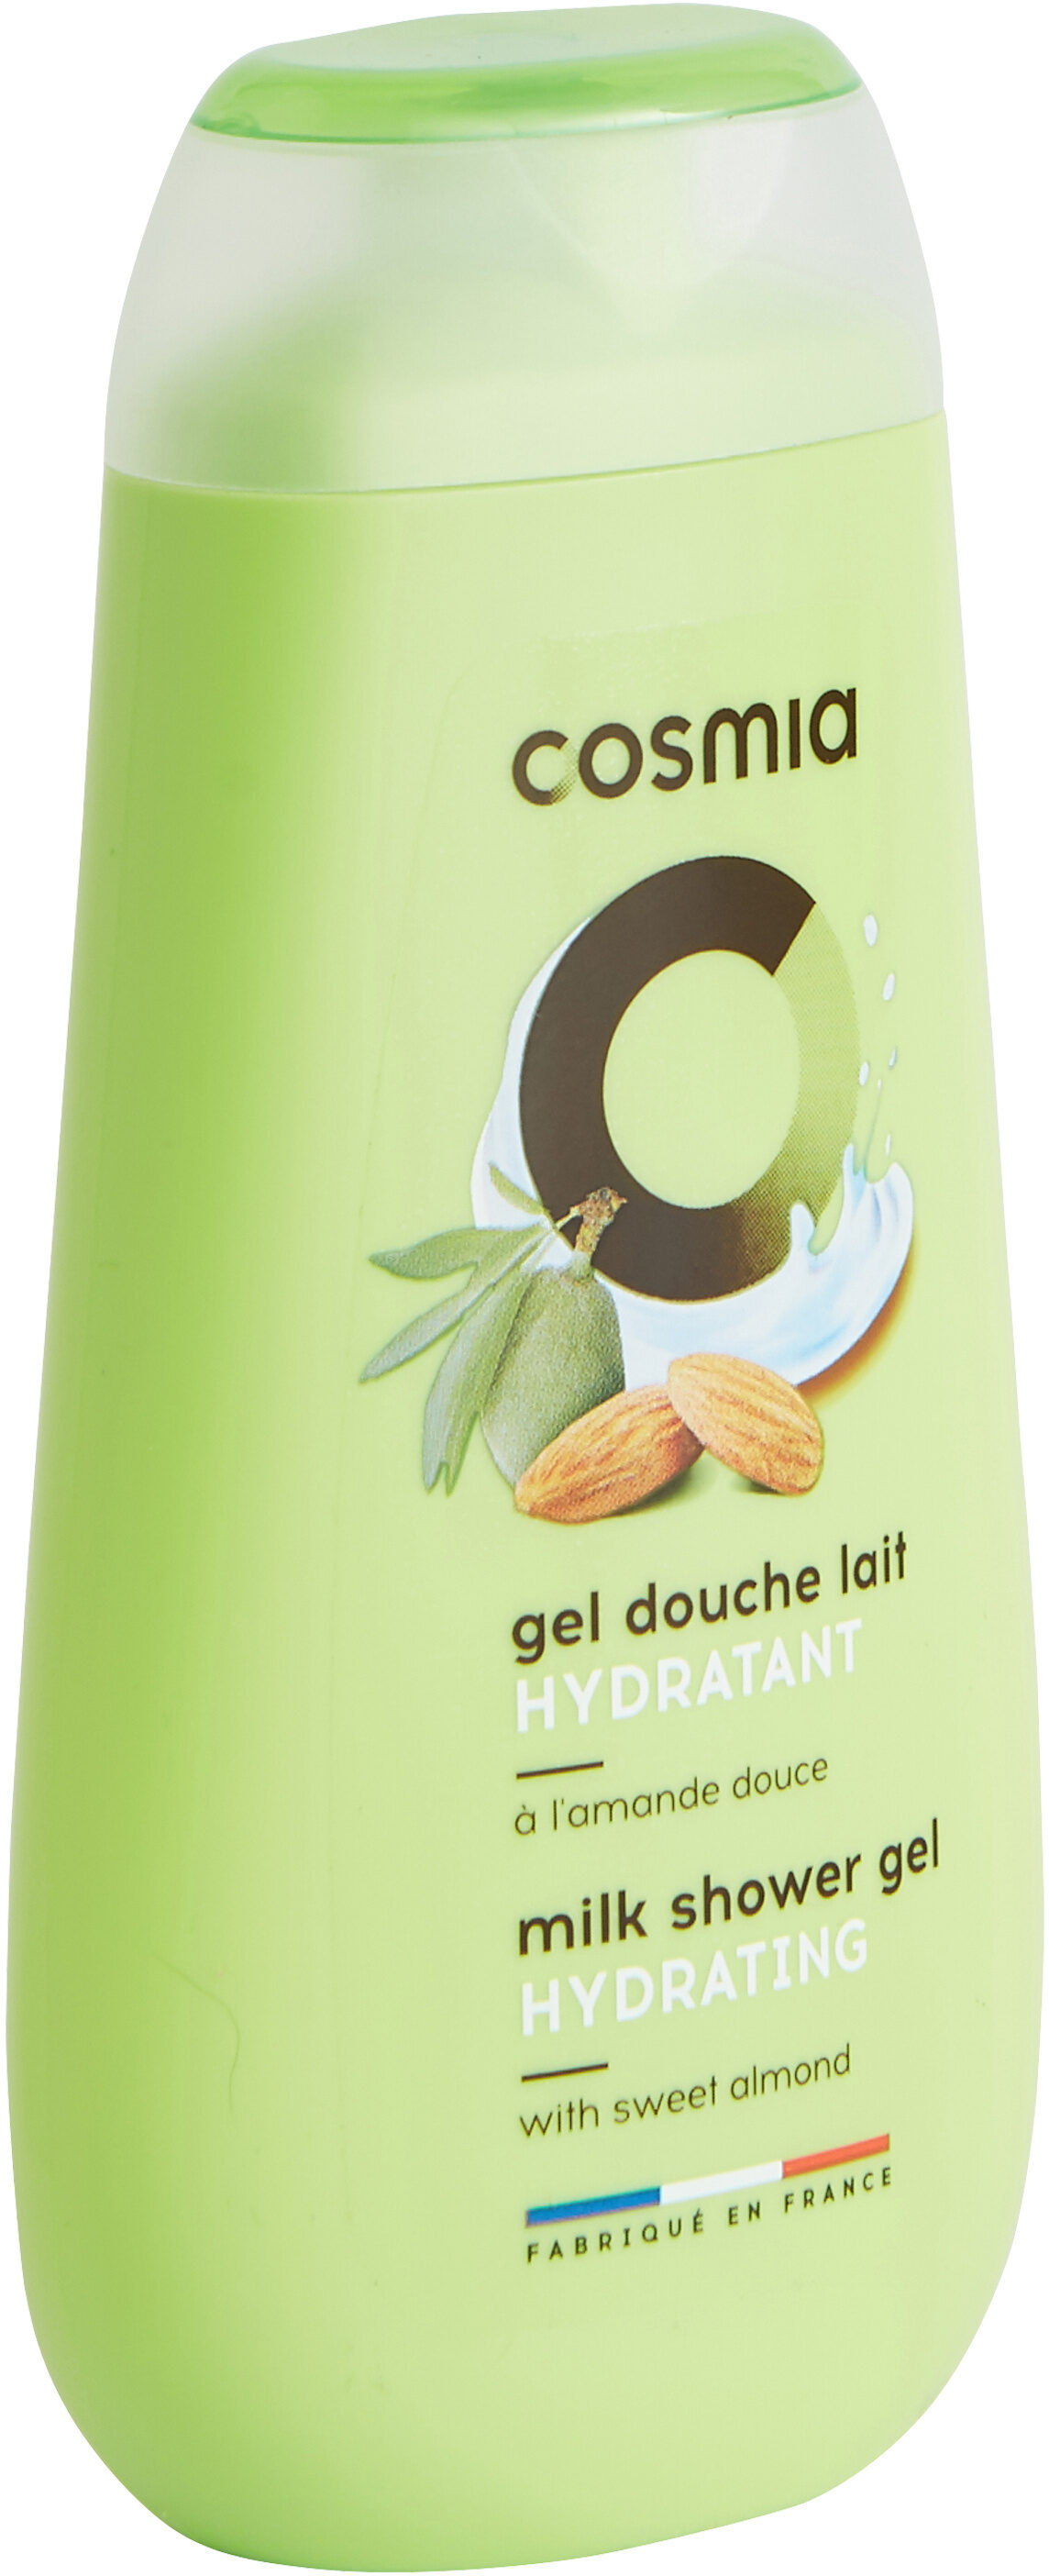 Cosmia gel douche lait hydratant a l'amande douce - 製品 - fr